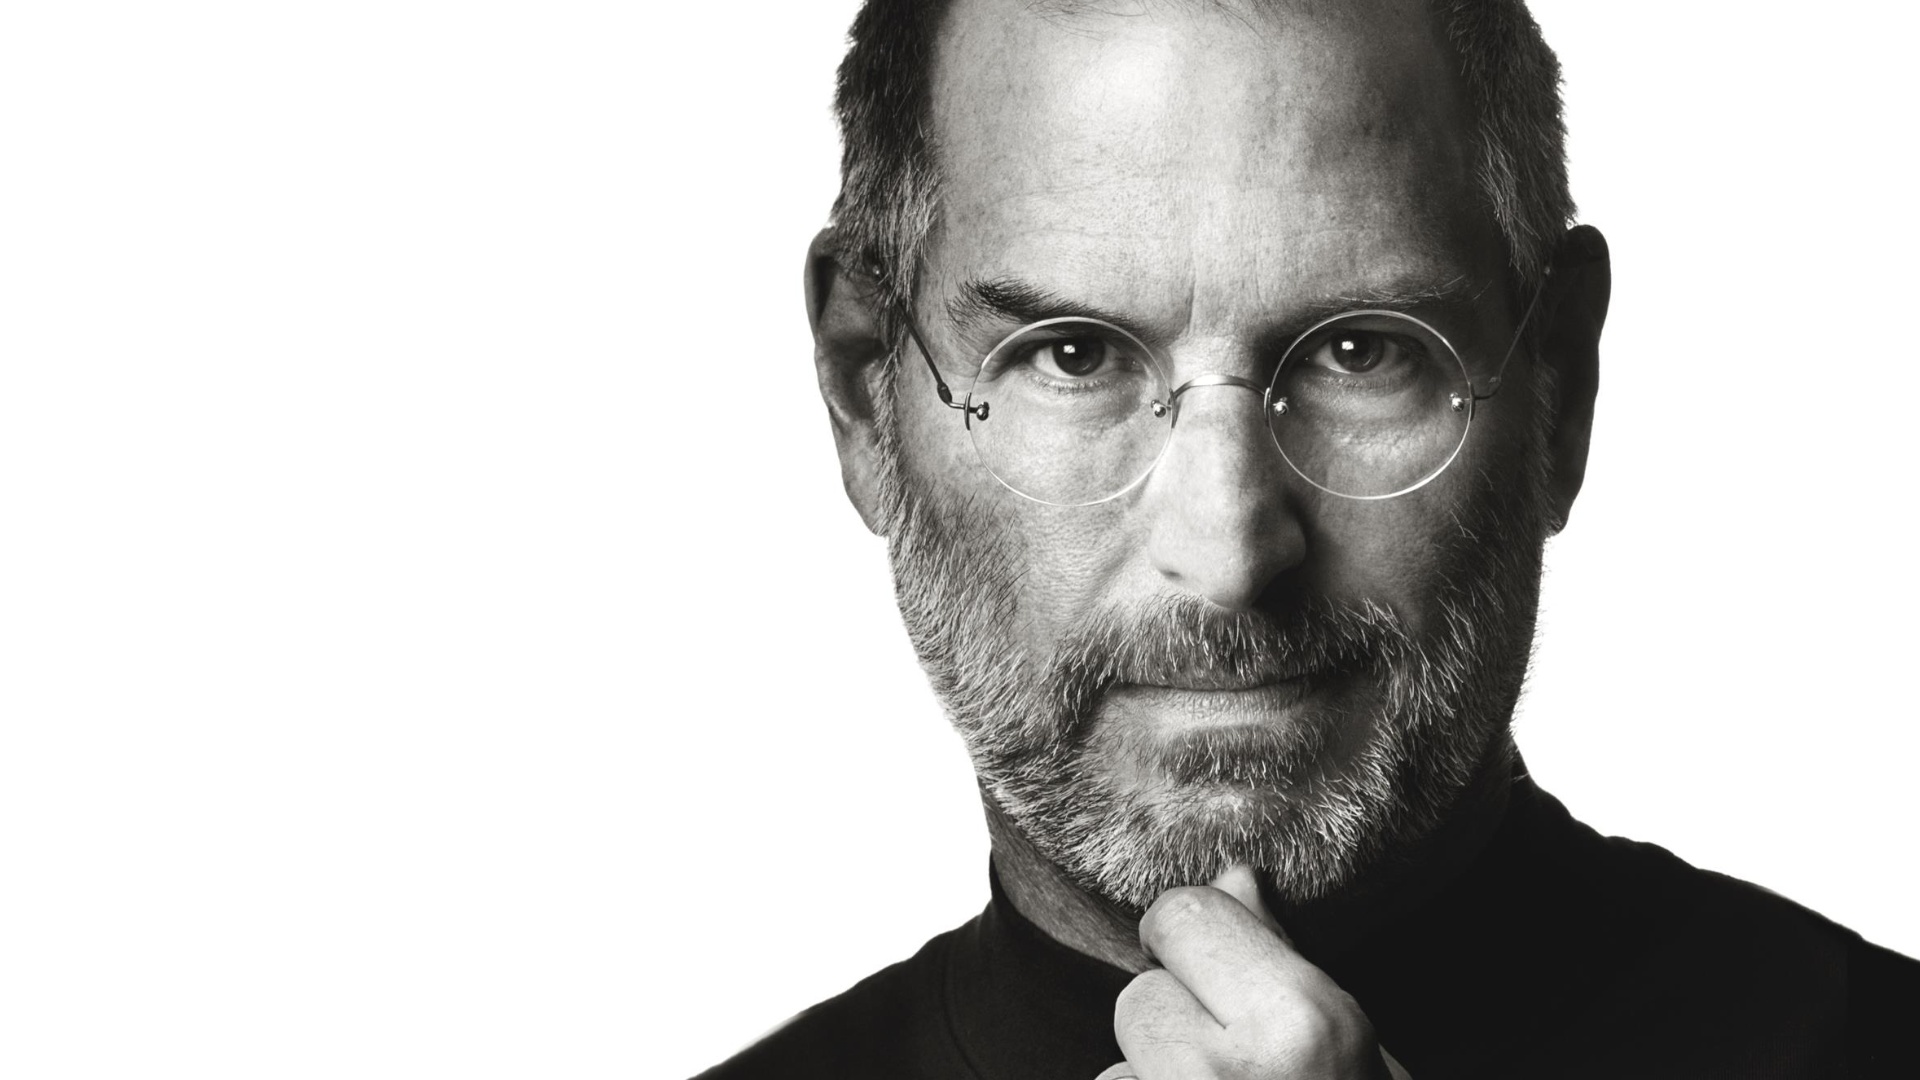 #Steve Jobs‘ Auswahlprozess bei Apple: Warum Zustimmung ein No-Go war